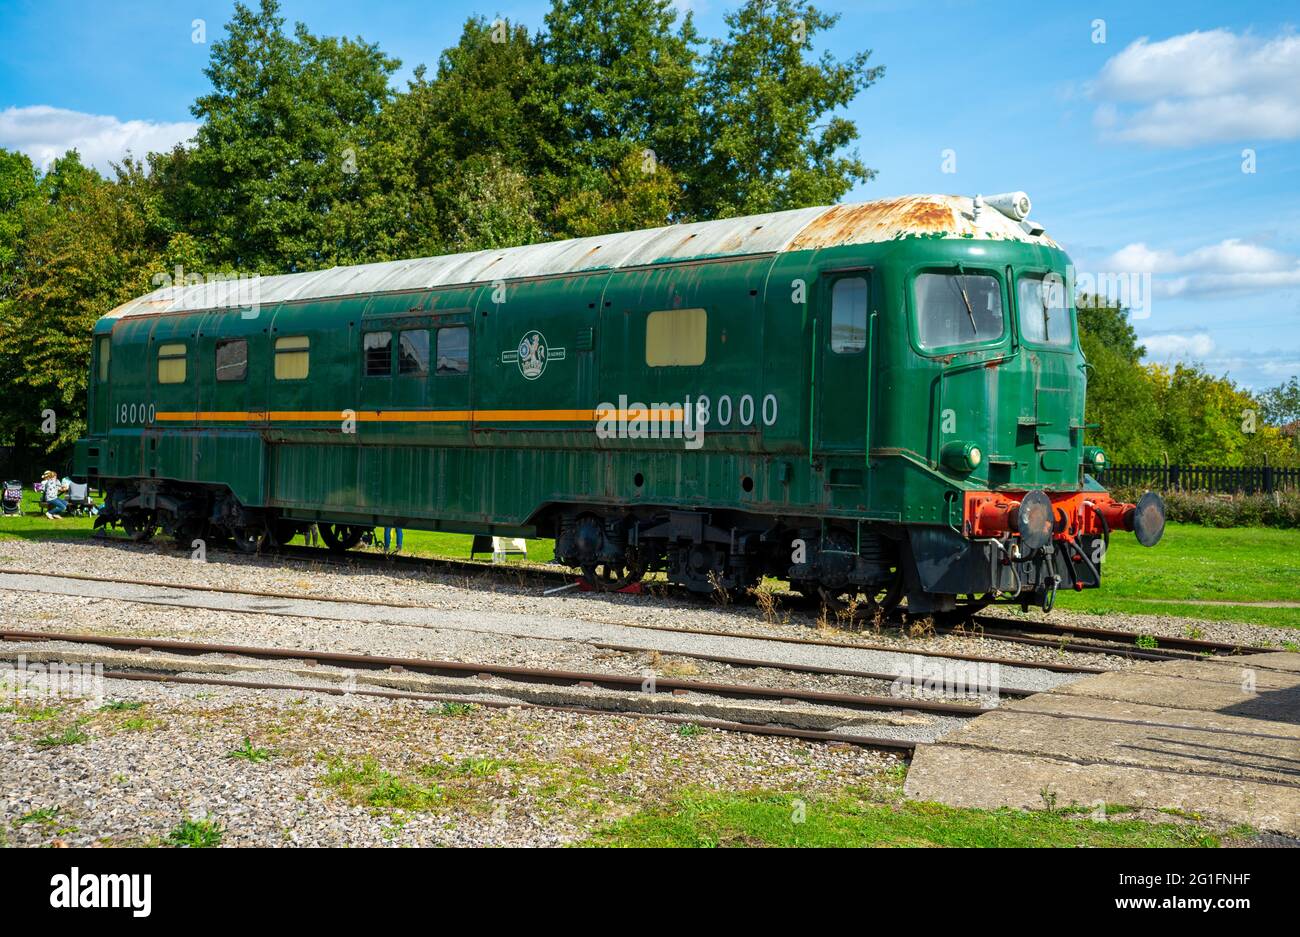 British Railways vintage diesel locomotive train Stock Photo